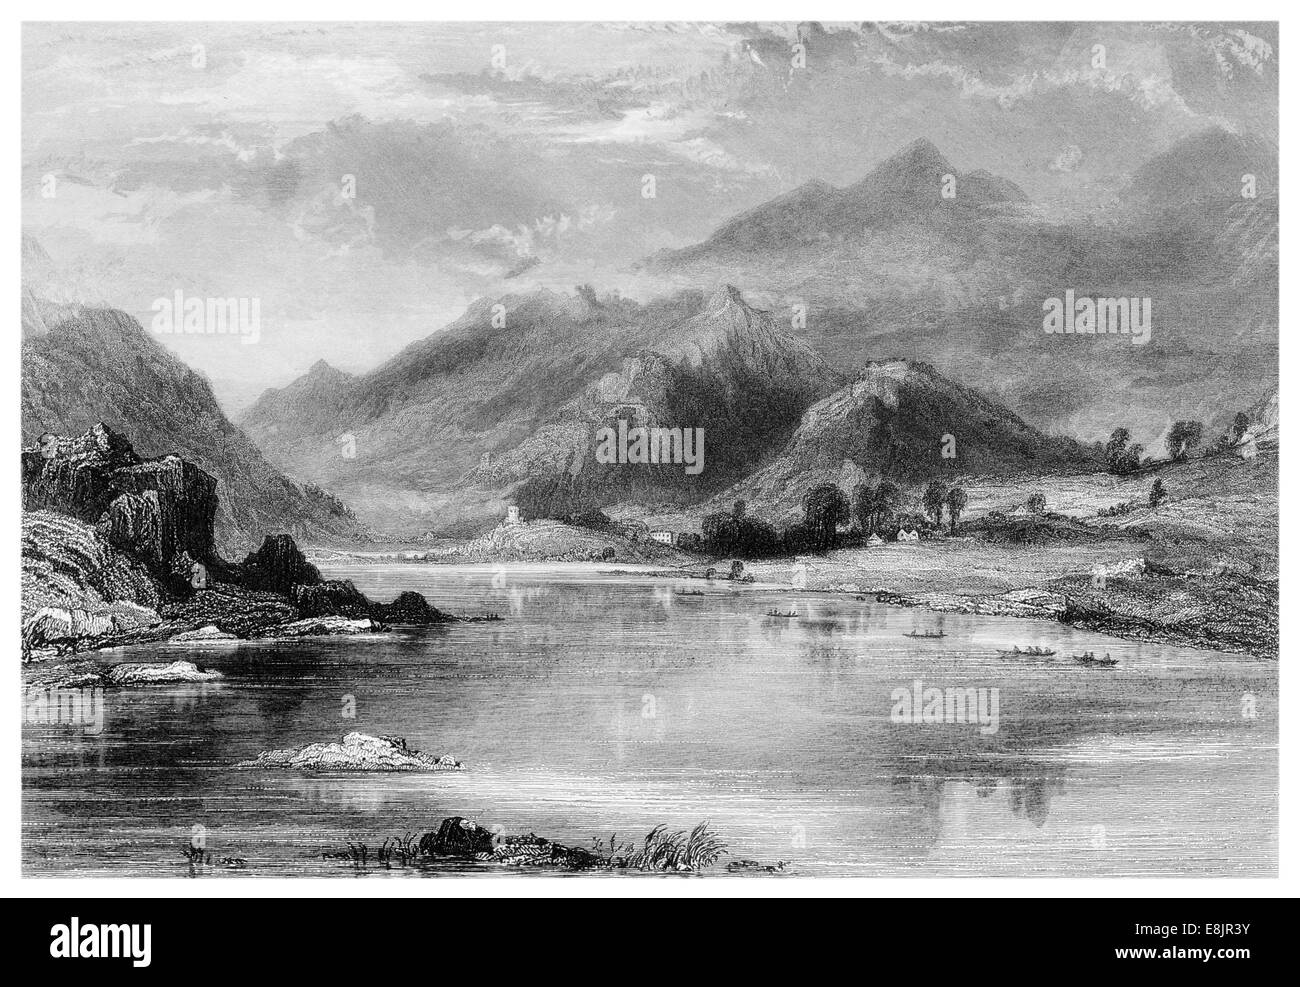 Llanberis Dorf Gwynedd, Nordwales Südufer See Llyn Padarn Fuß Snowdon, Wales.Snowdonia, Yr Wyddfa um 1840 Stockfoto